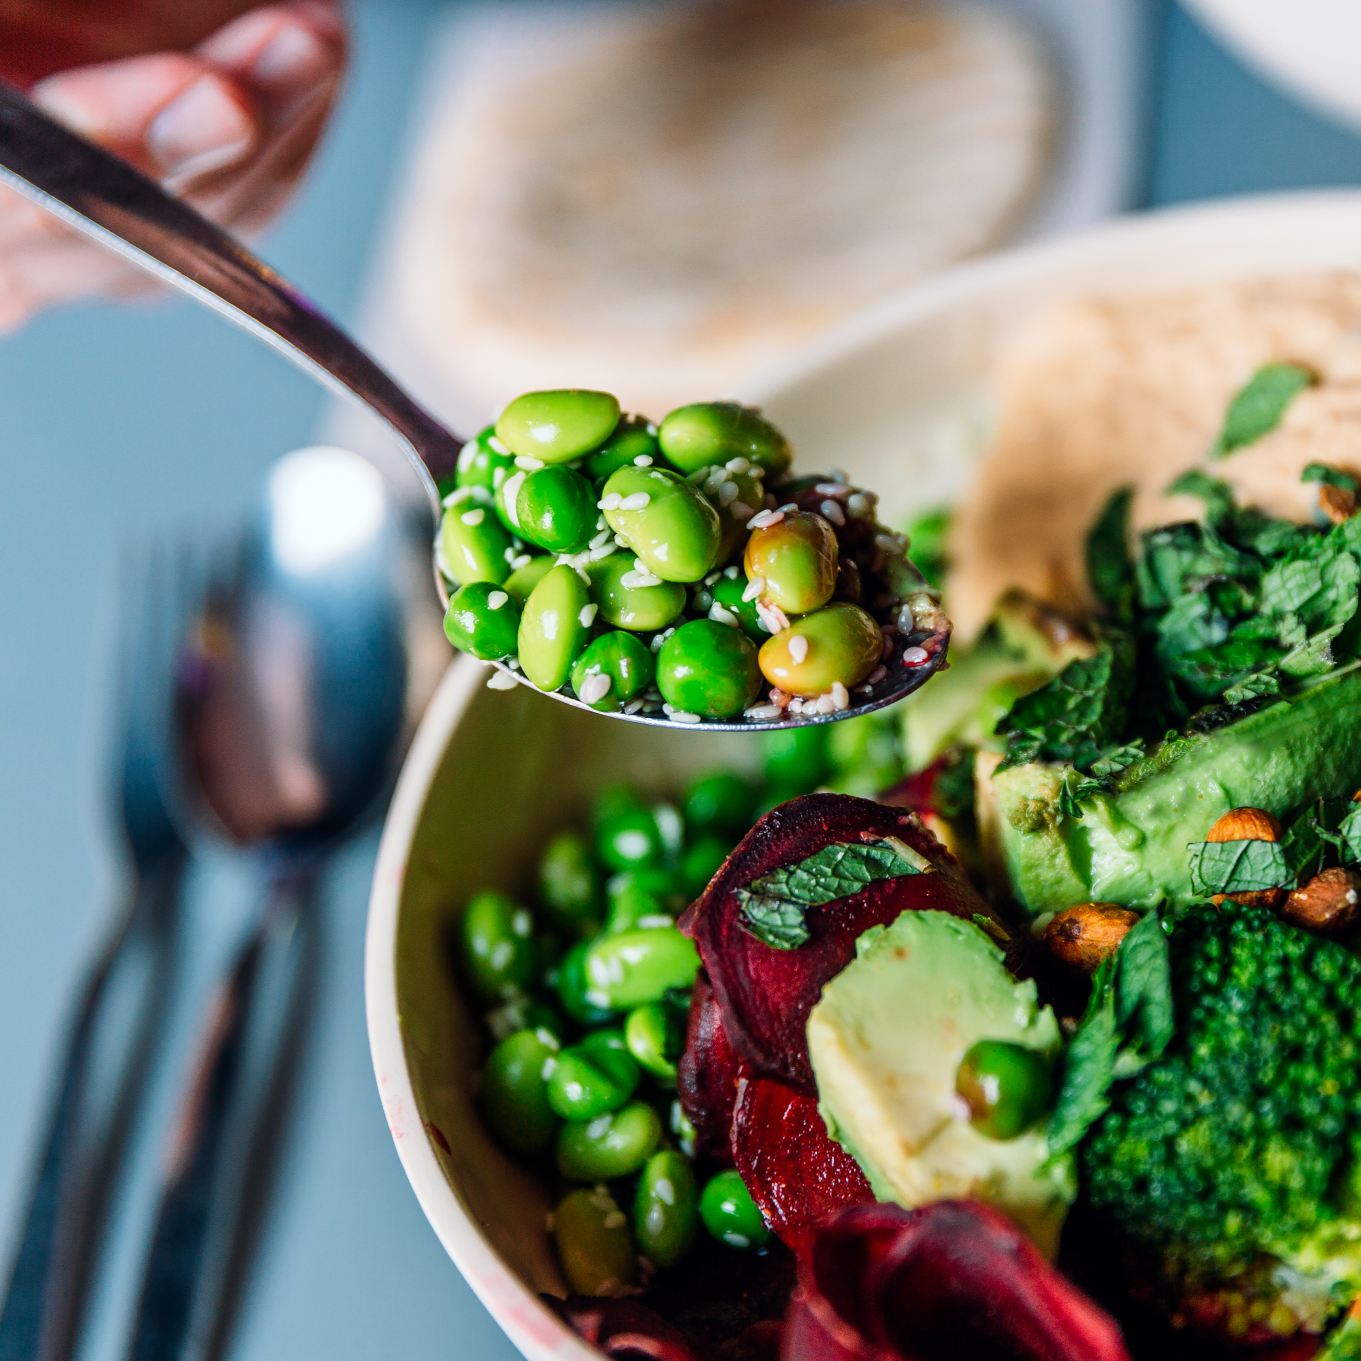 Eine Person isst eine vegane Bowl mit Edamame, Brokkoli, Avocado, Rote Bete, Hummus und Nüssen.